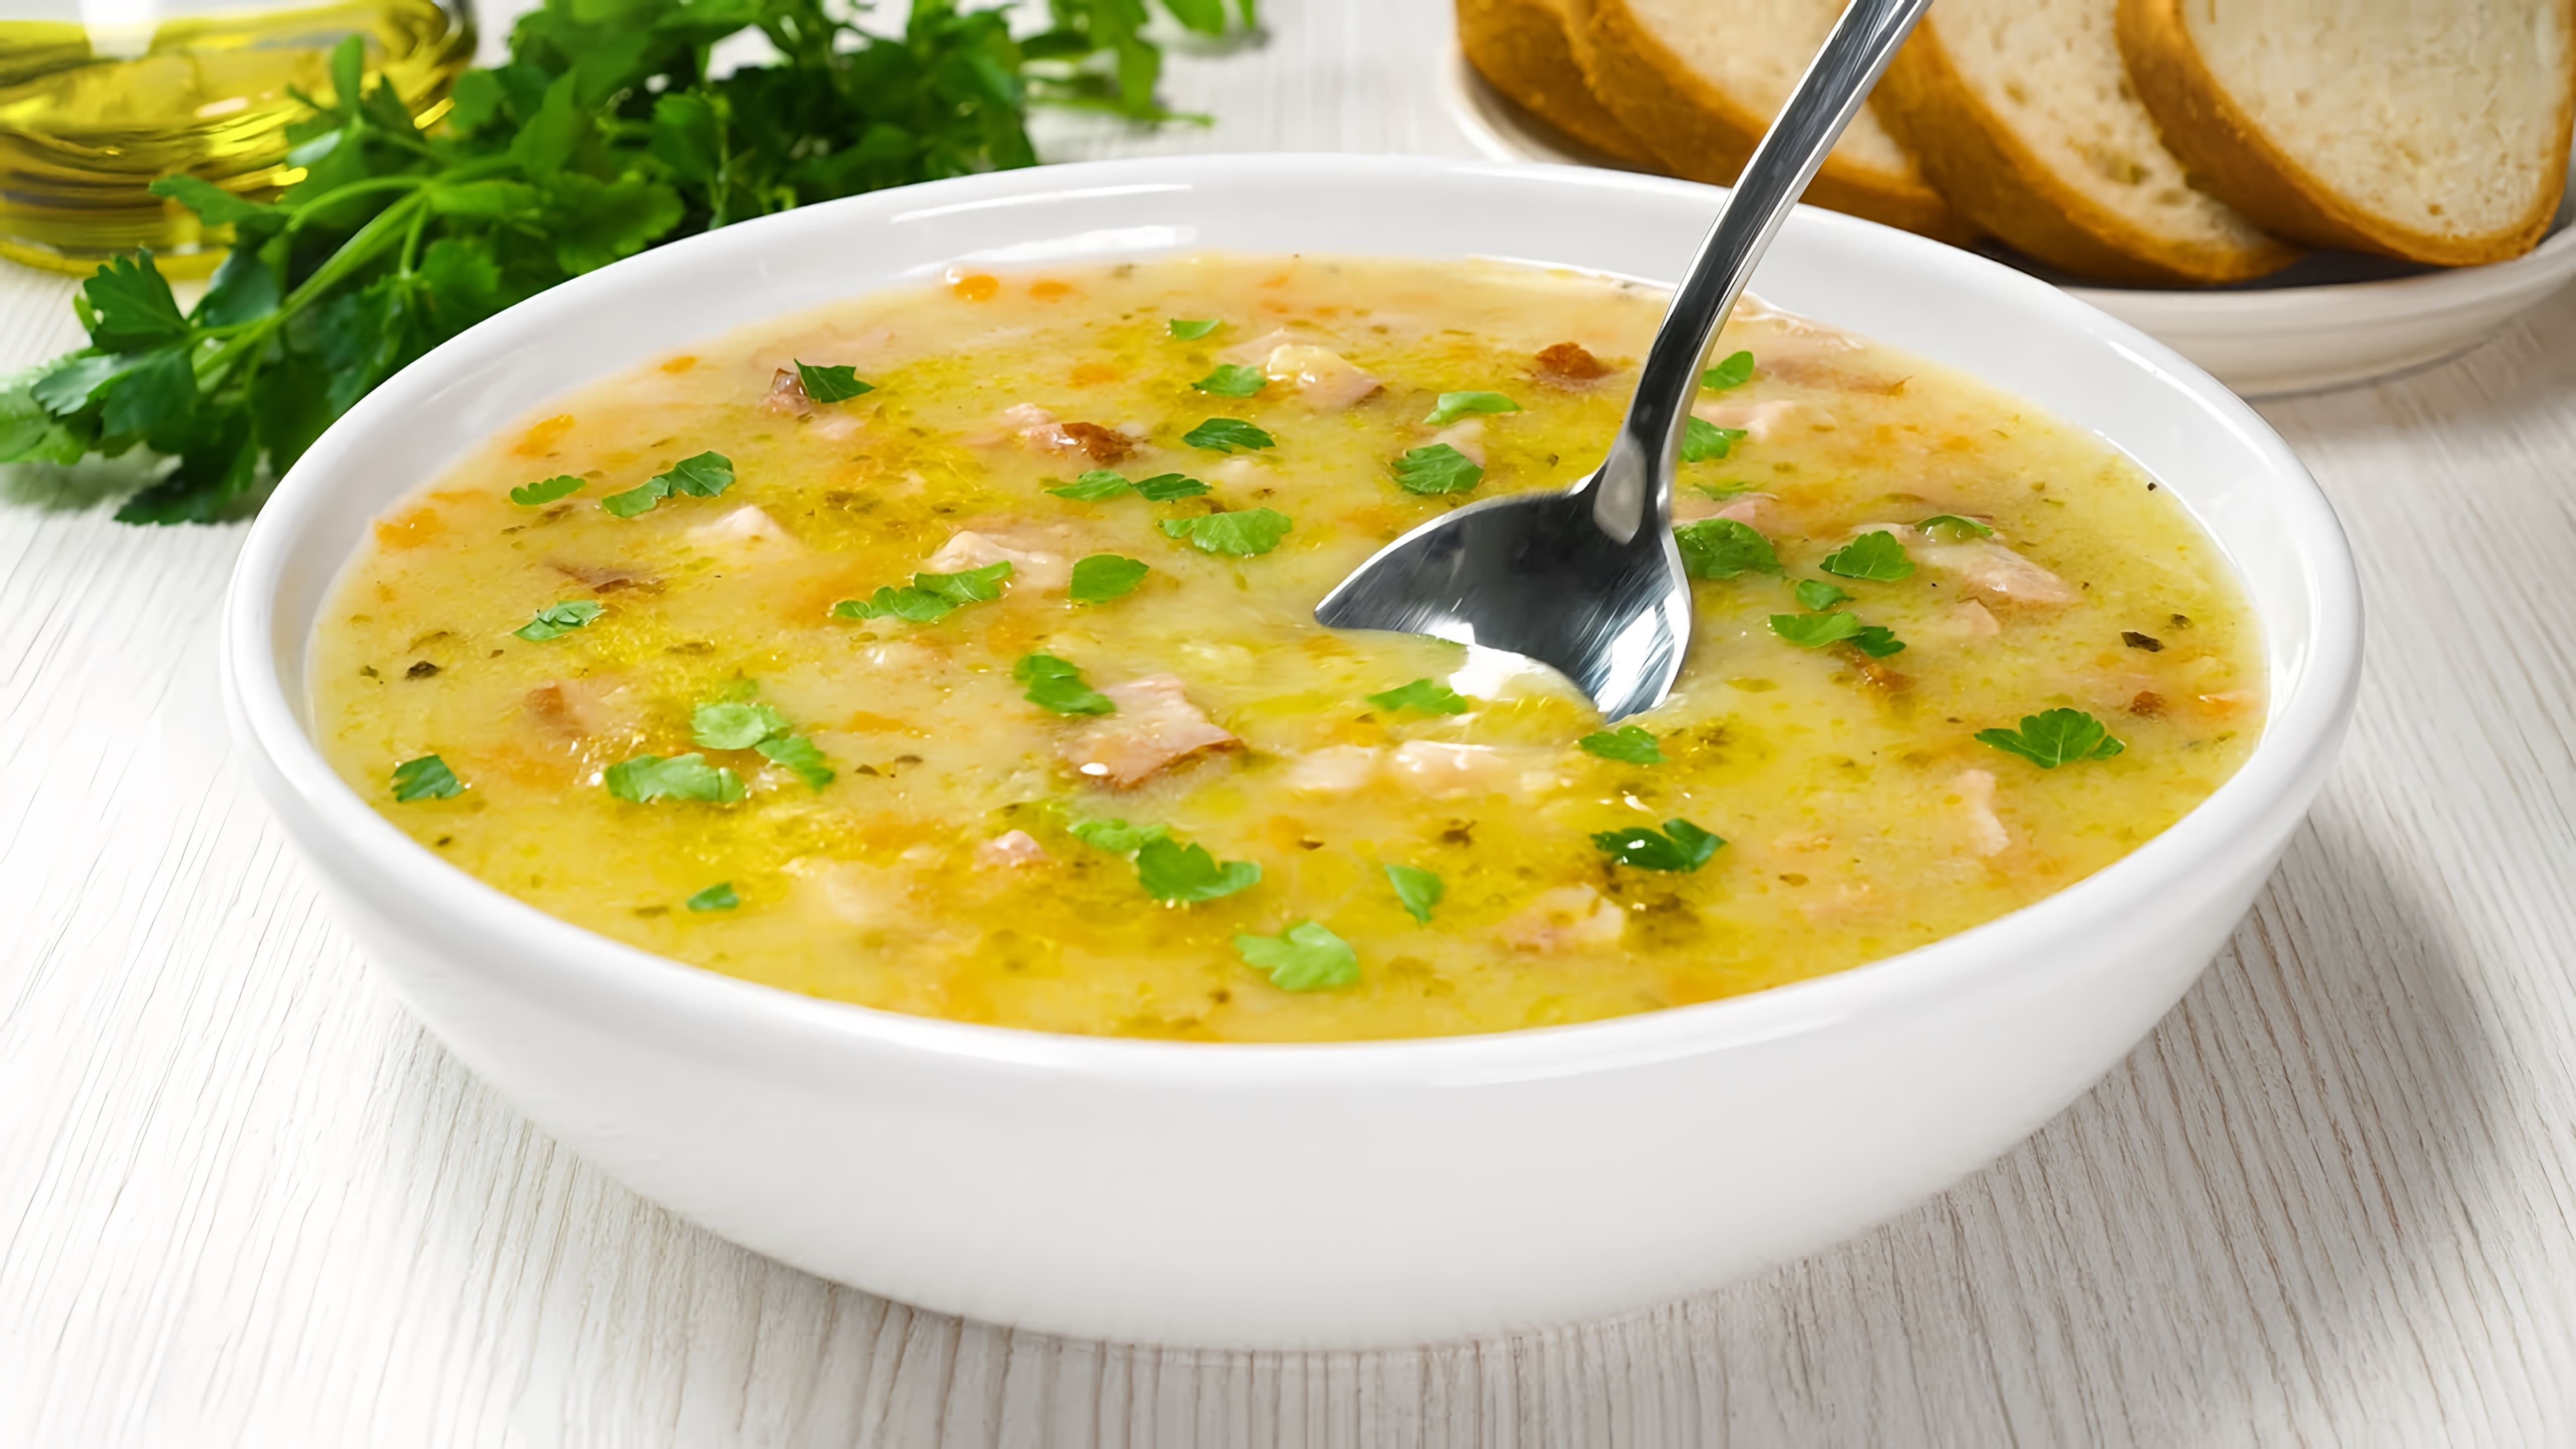 В этом видео демонстрируется рецепт приготовления вкусного картофельного супа за 30 минут